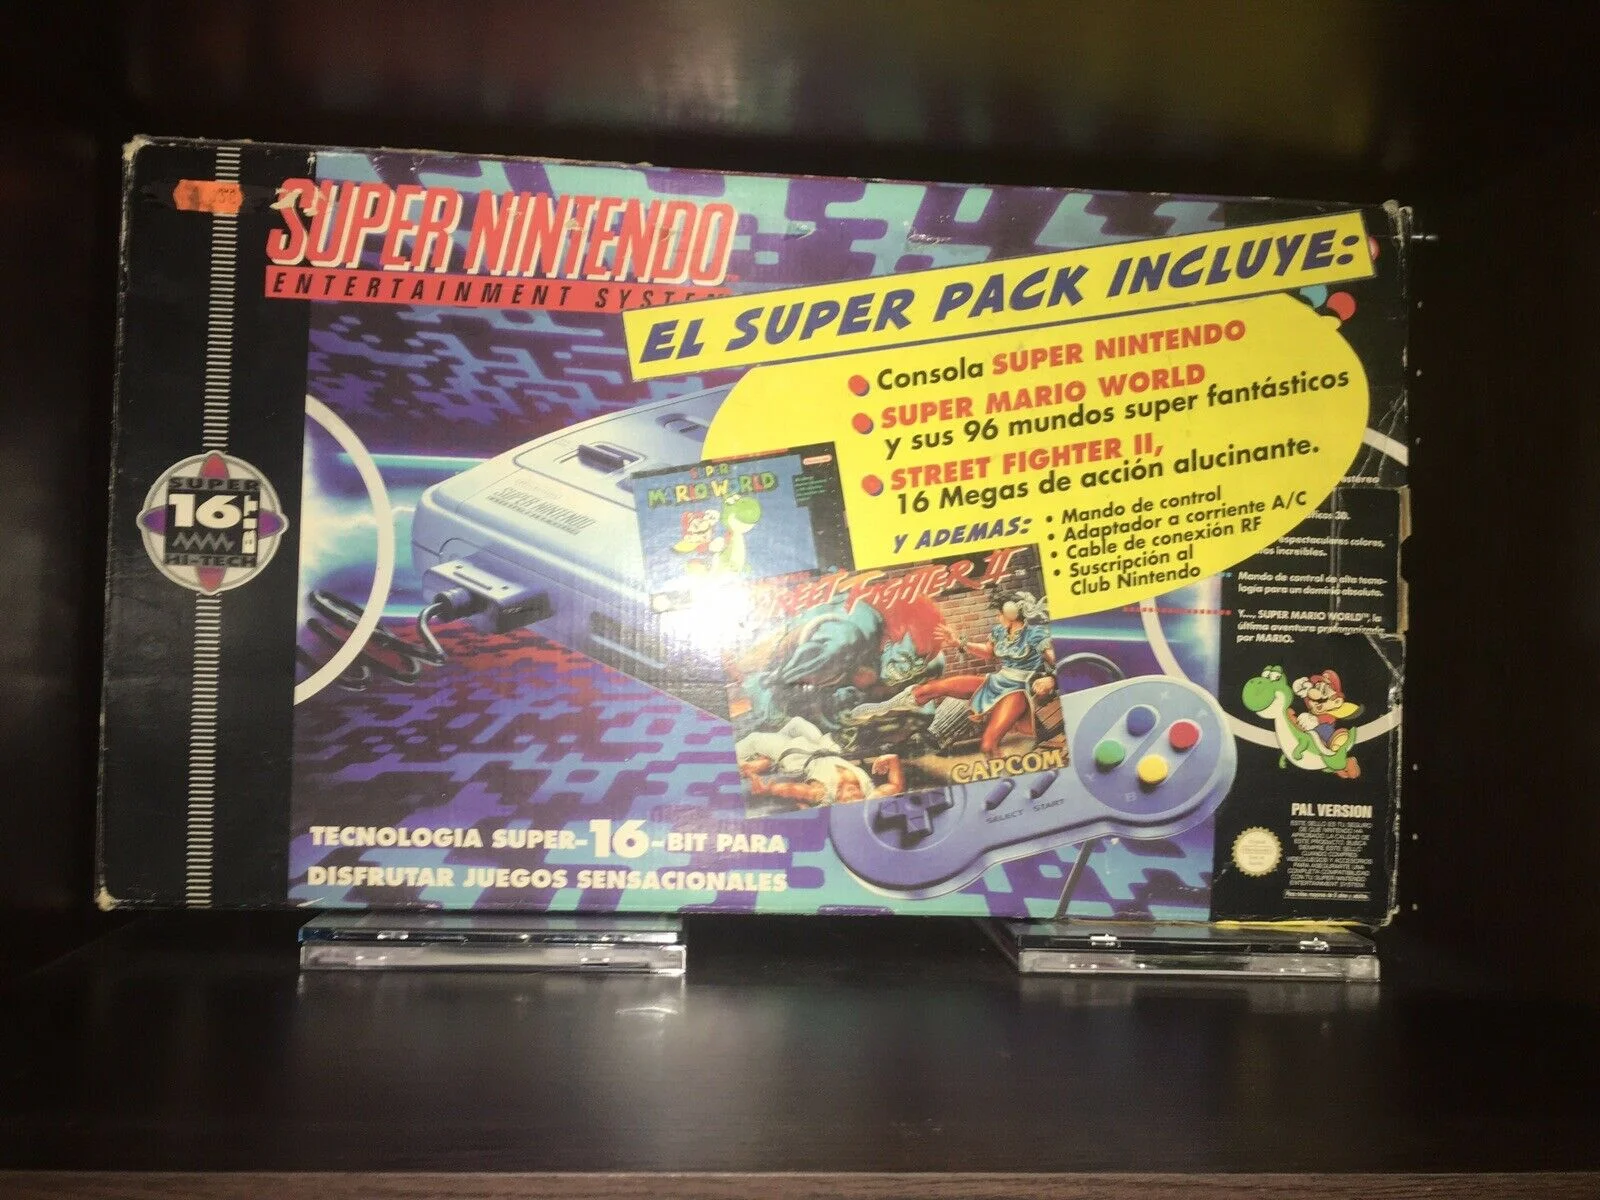  SNES El Super Pack